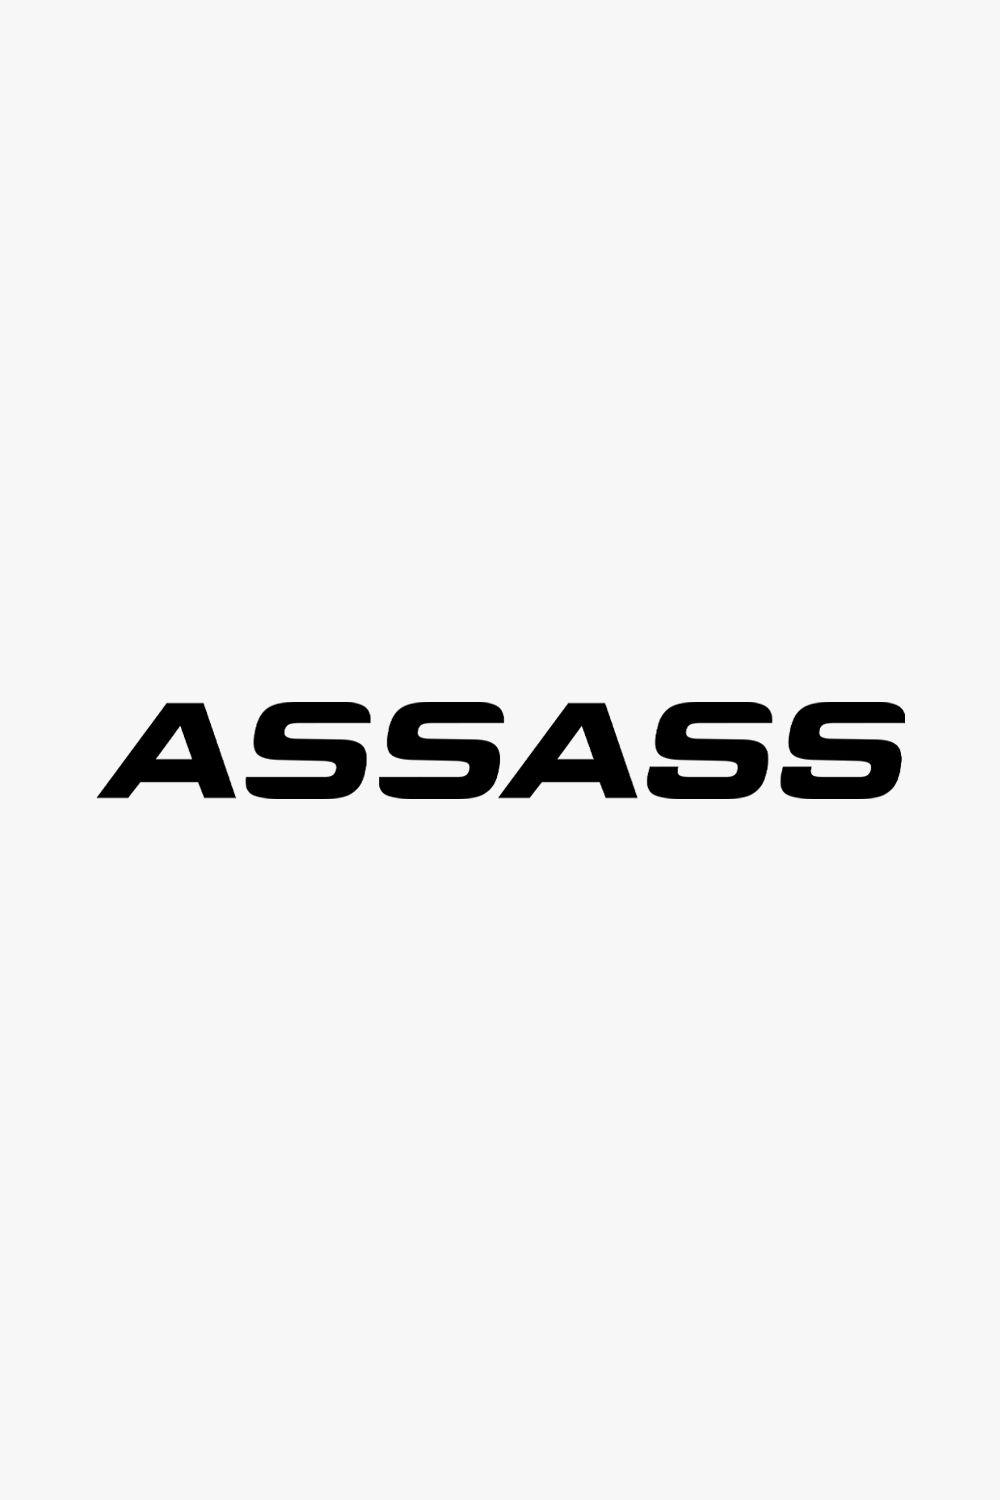 AssAss Decal